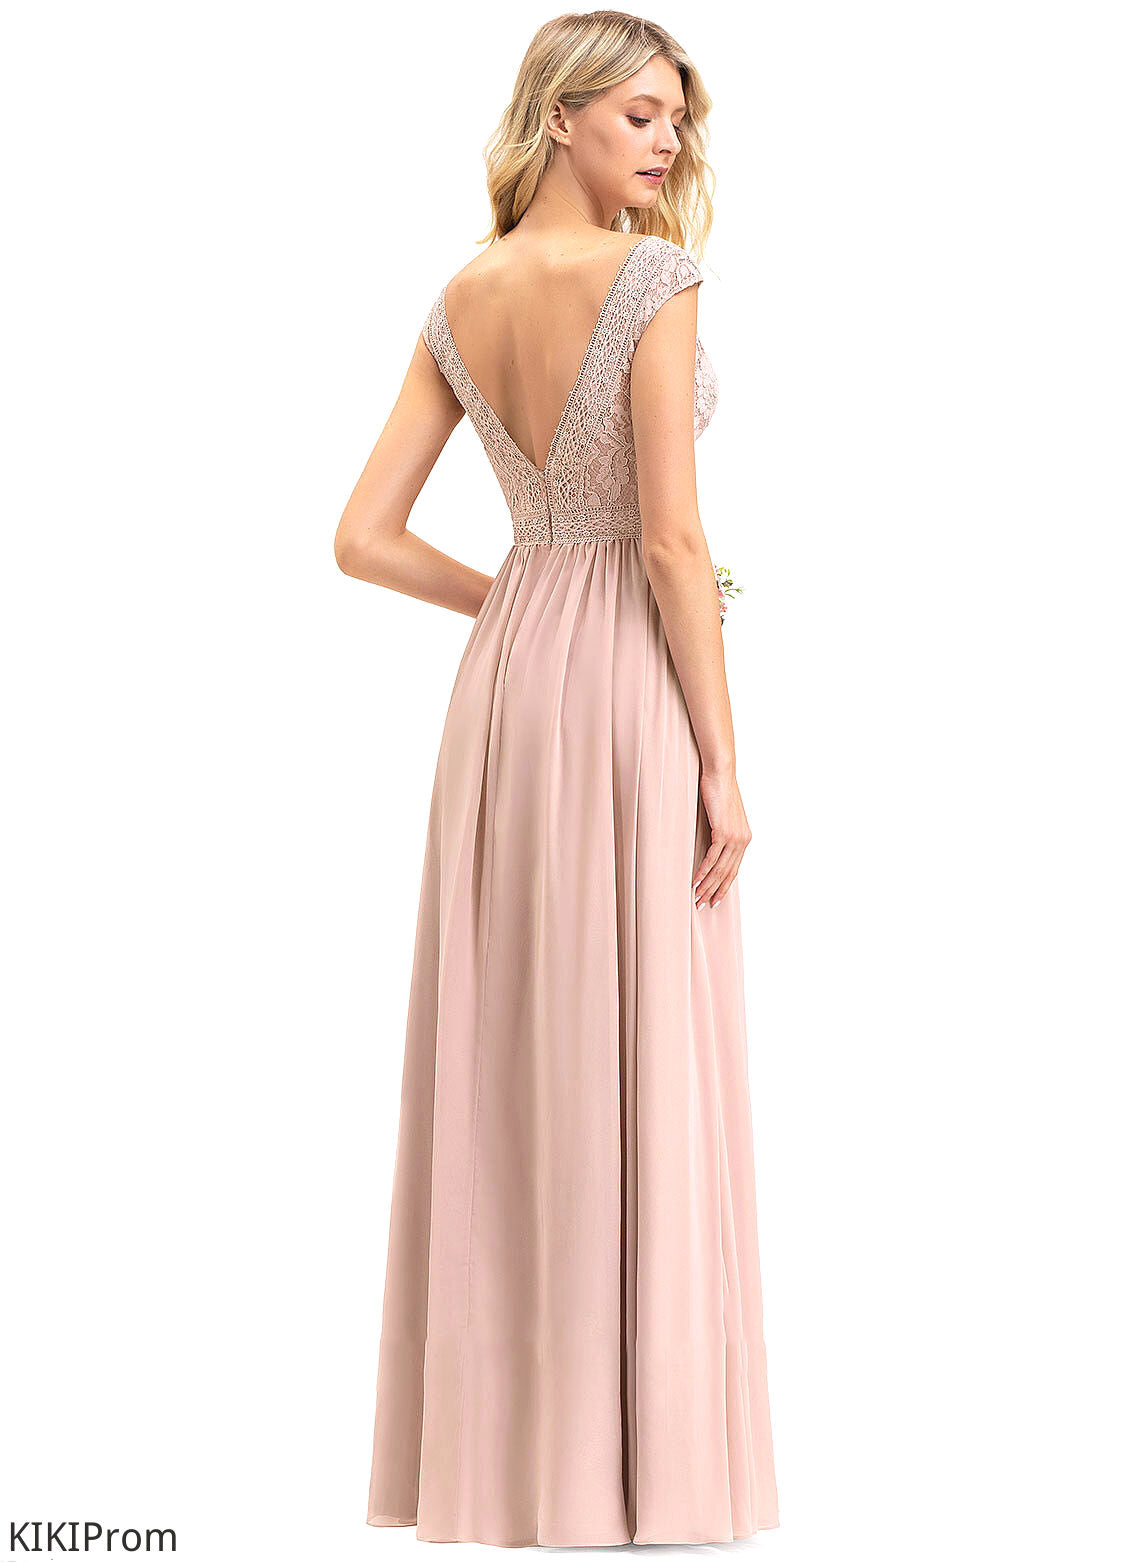 Silhouette A-Line Length Straps Floor-Length Lace Neckline Fabric V-neck Dana Bridesmaid Dresses